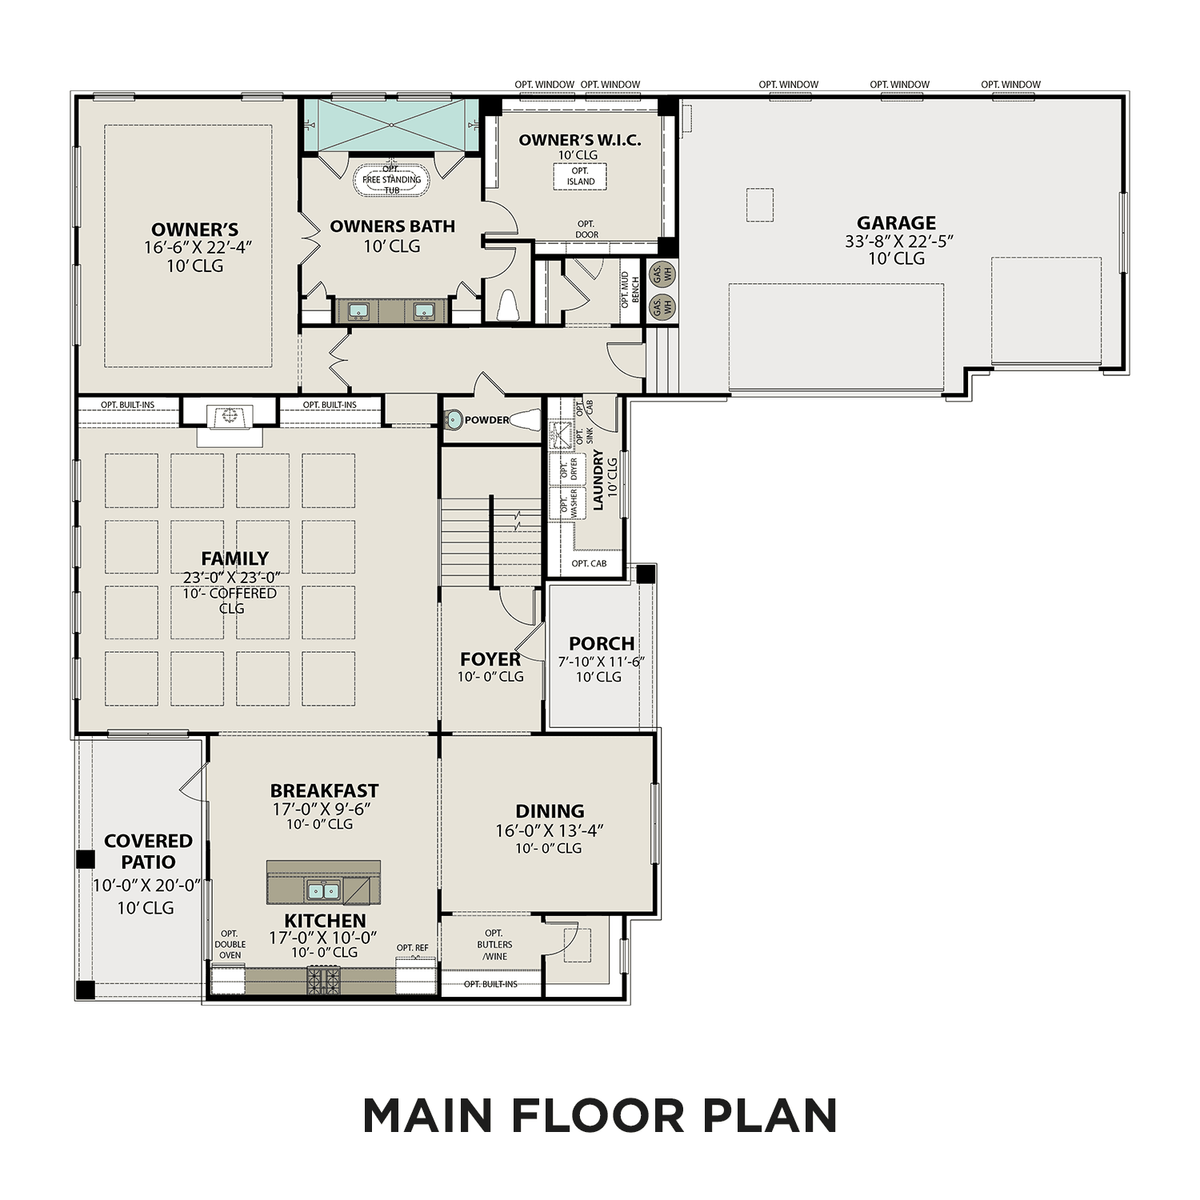 1 - The Bledsoe A floor plan layout for 5631 Eaglemont Dr in Davidson Homes' Shelton Square community.